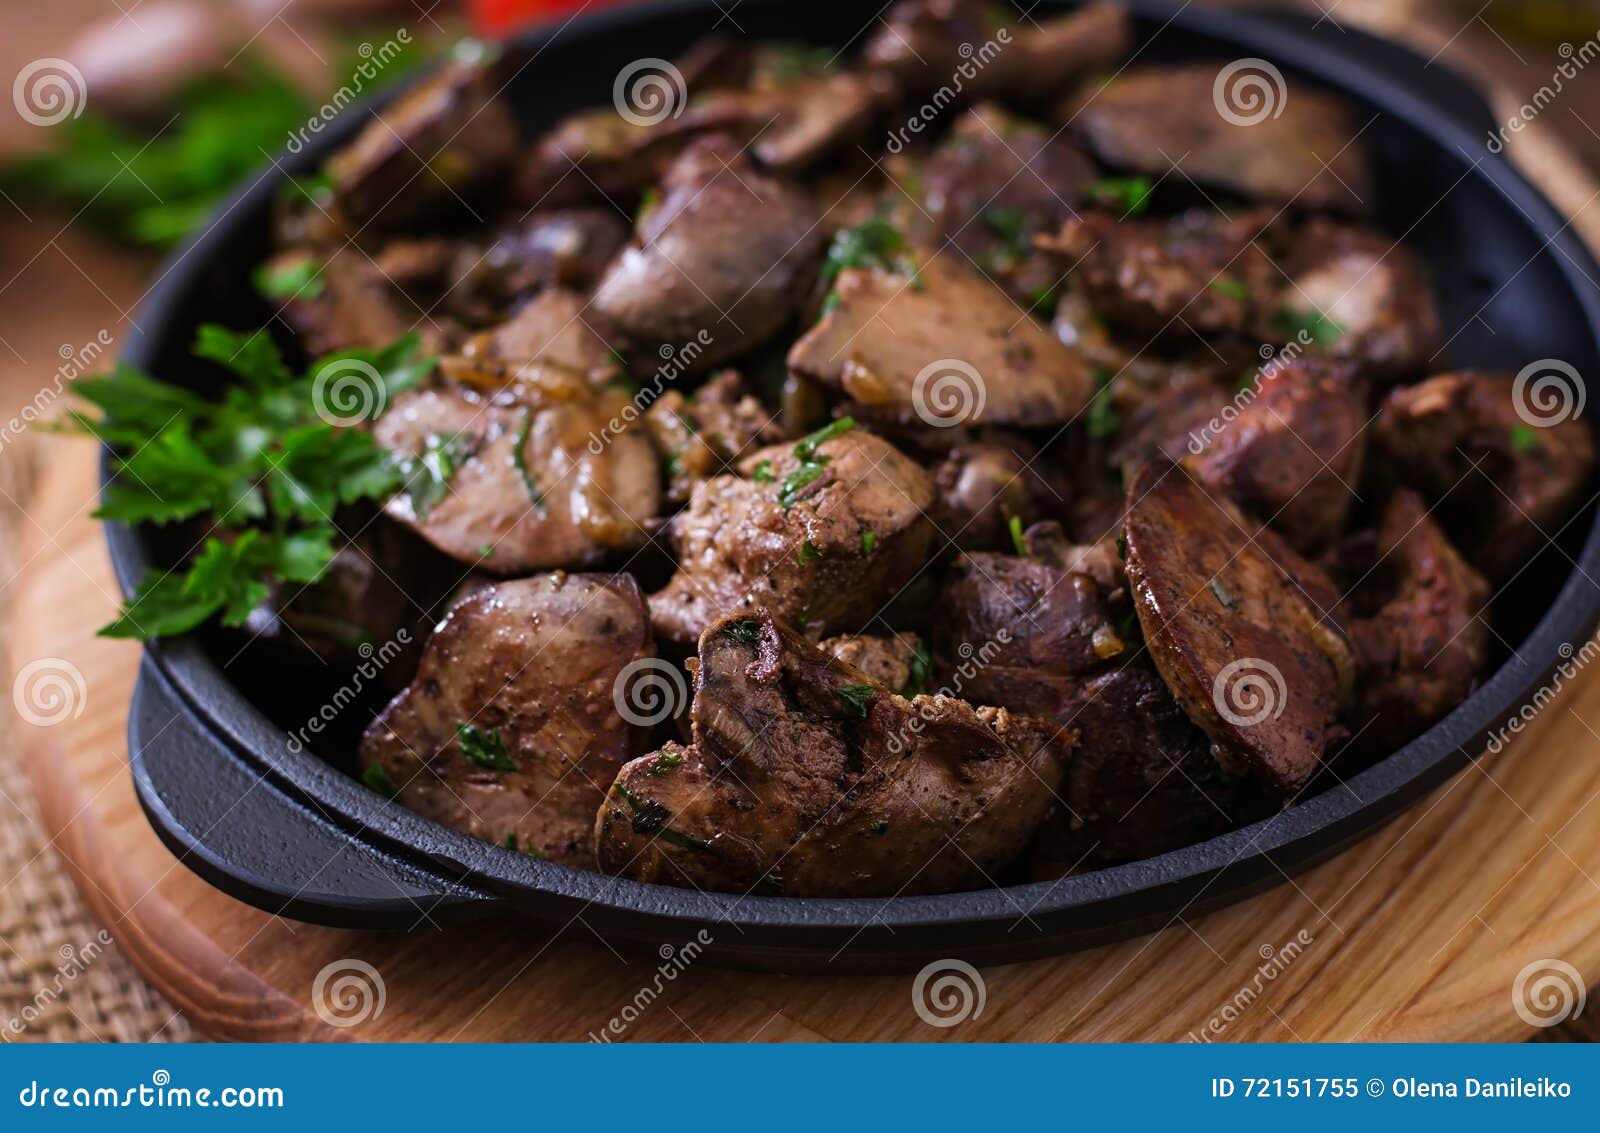 Fígado de frango frito imagem de stock. Imagem de gourmet - 72151755